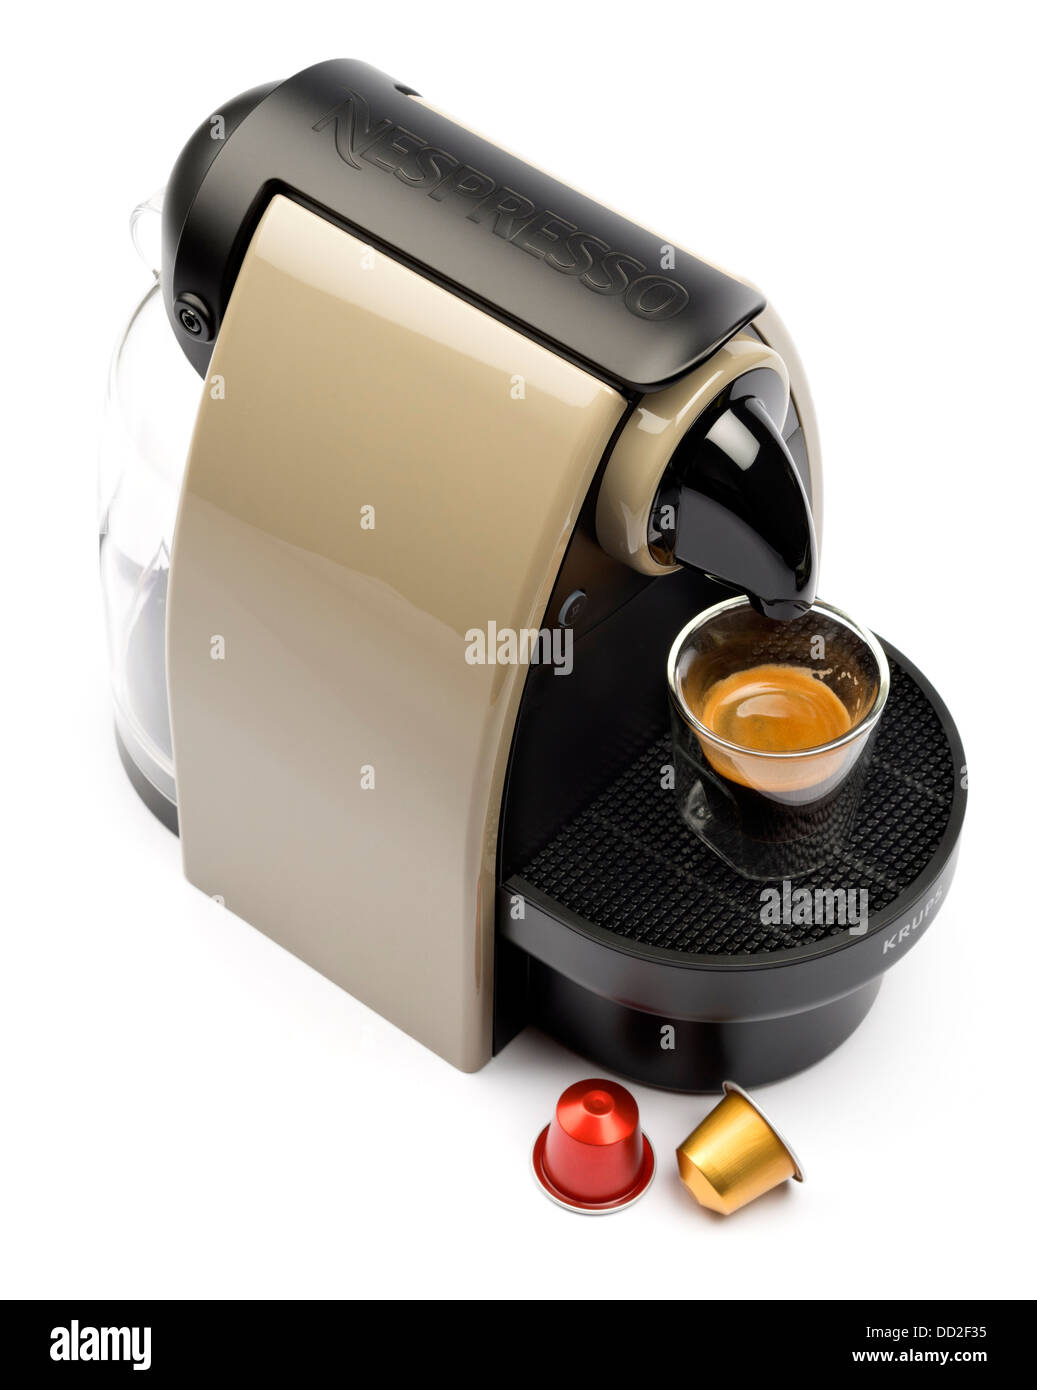 Machine à café Nespresso découper isolé sur fond blanc - Essenza Krups XN 2140 Terre Auto Banque D'Images